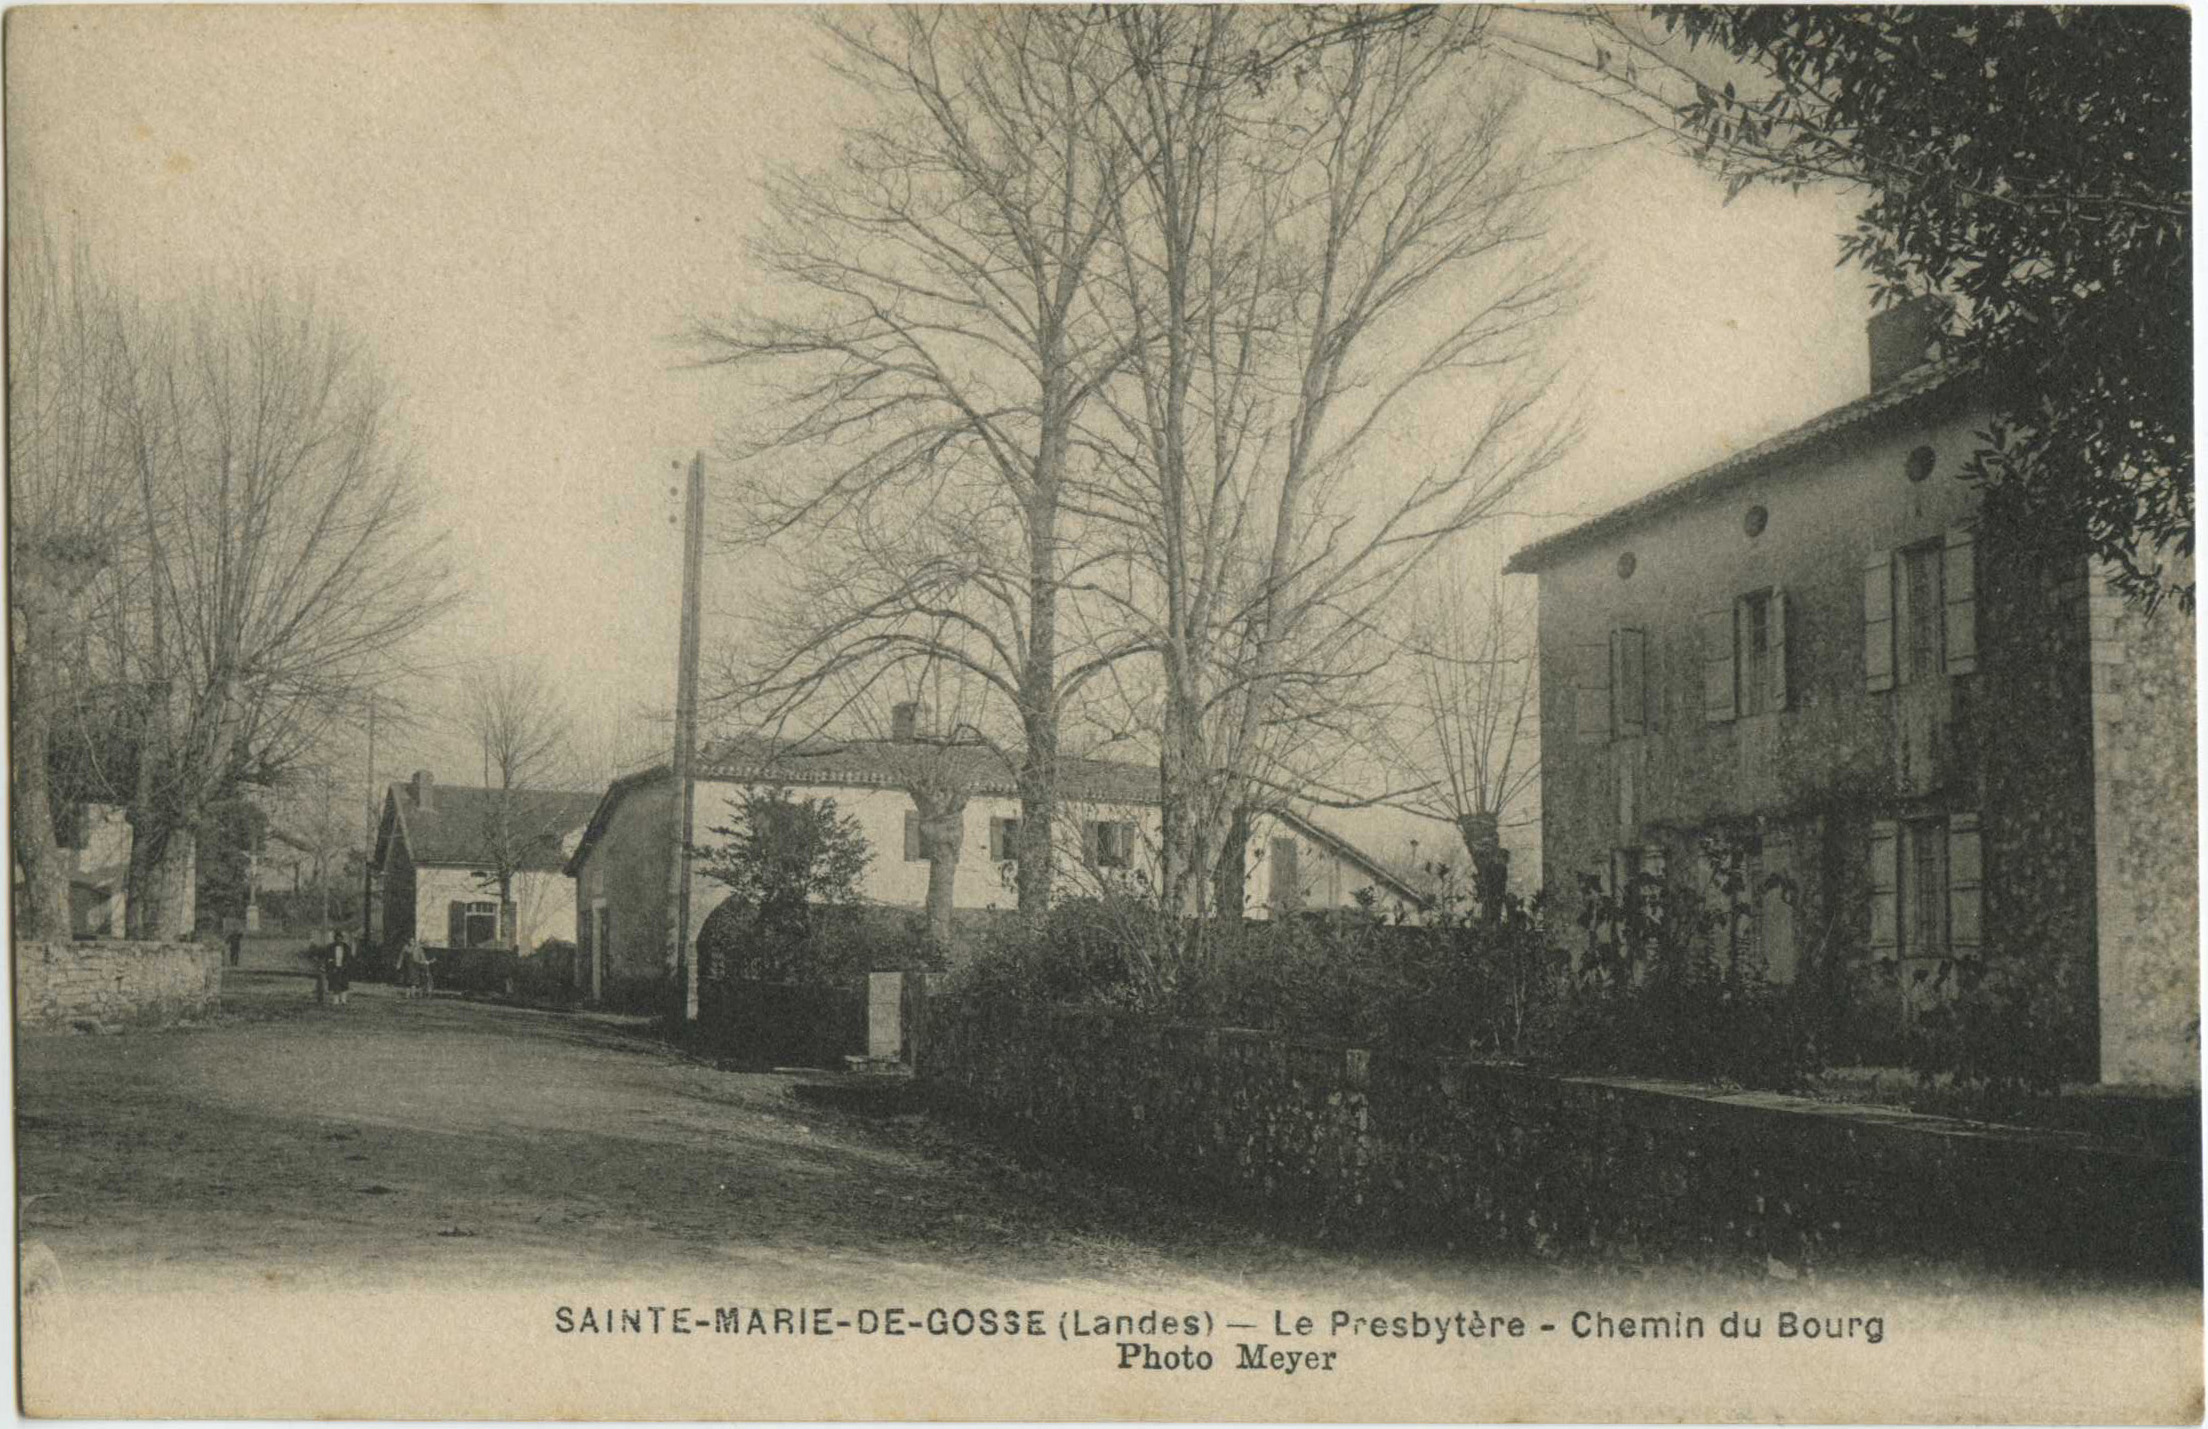 Sainte-Marie-de-Gosse - Le Presbytère - Chemin du Bourg